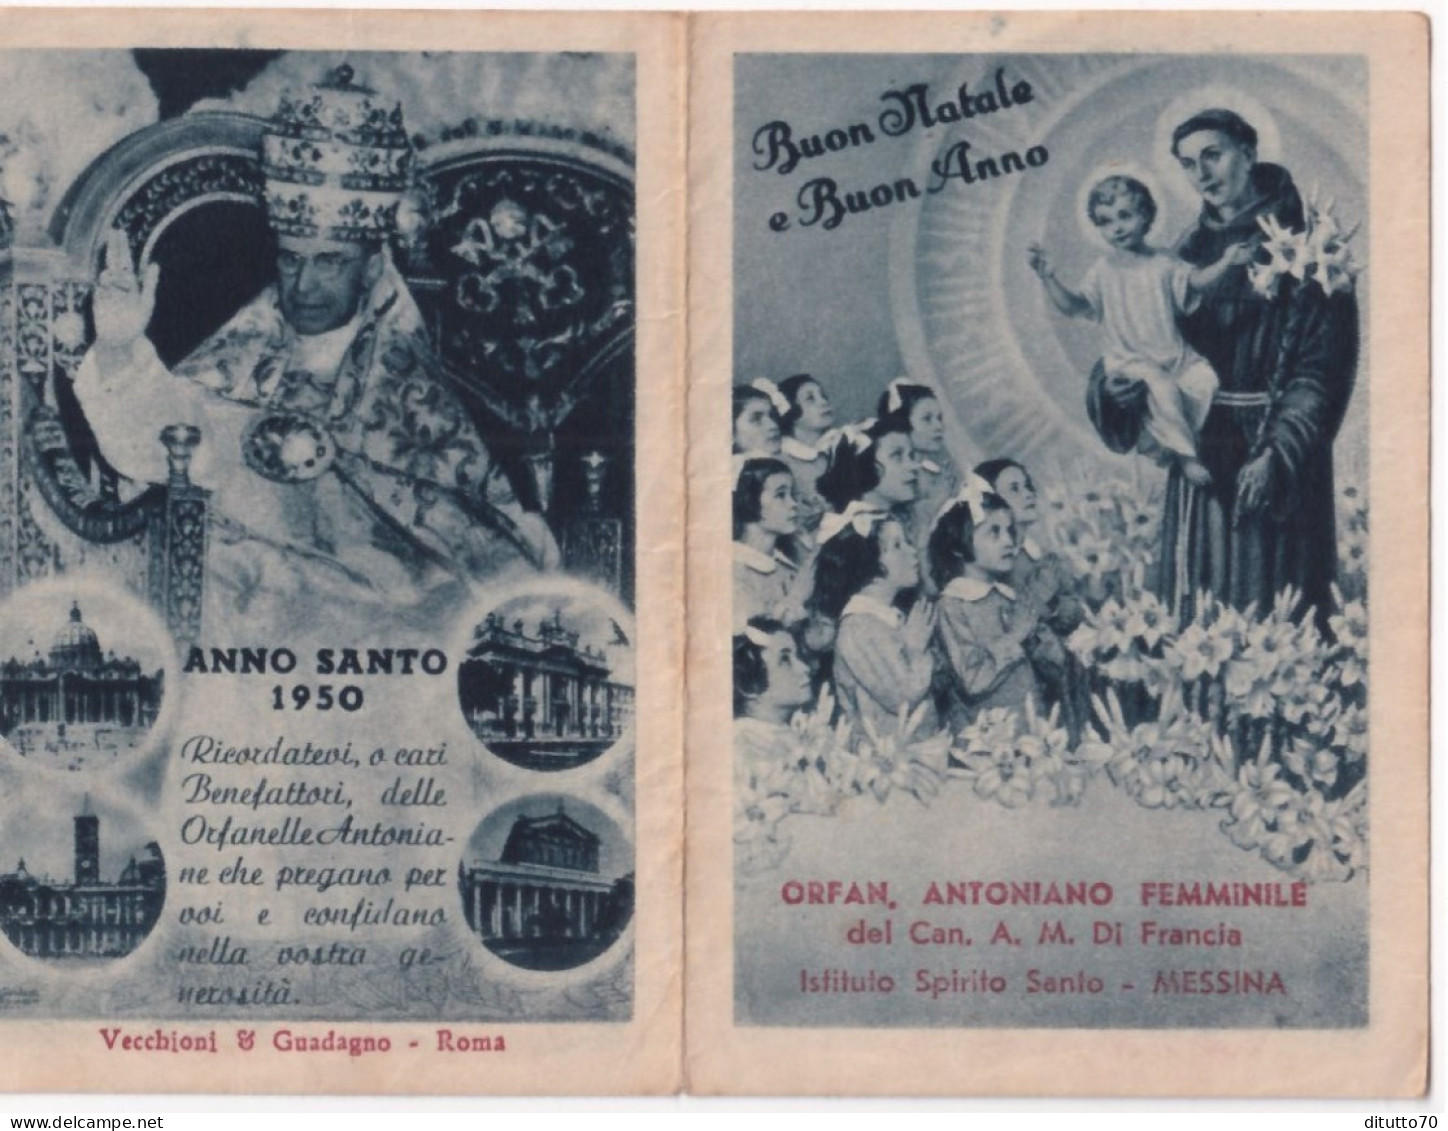 Calendarietto - Orfanotrofio Antoniano Femminile  Del Can A.m.di Francia - Messina - Anno  1950 - Tamaño Pequeño : 1941-60